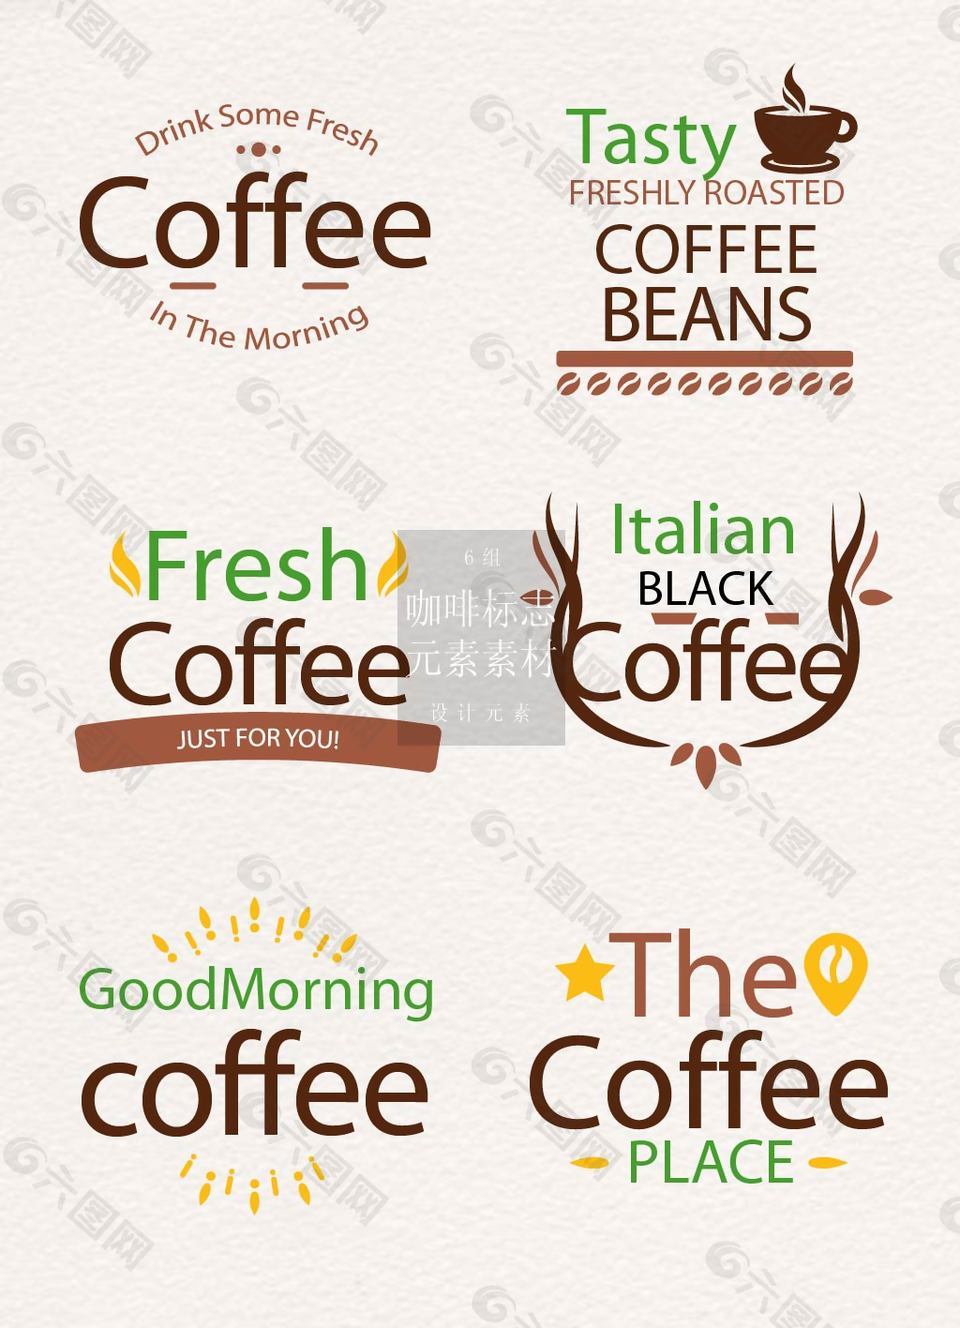 英文版咖啡标志矢量素材